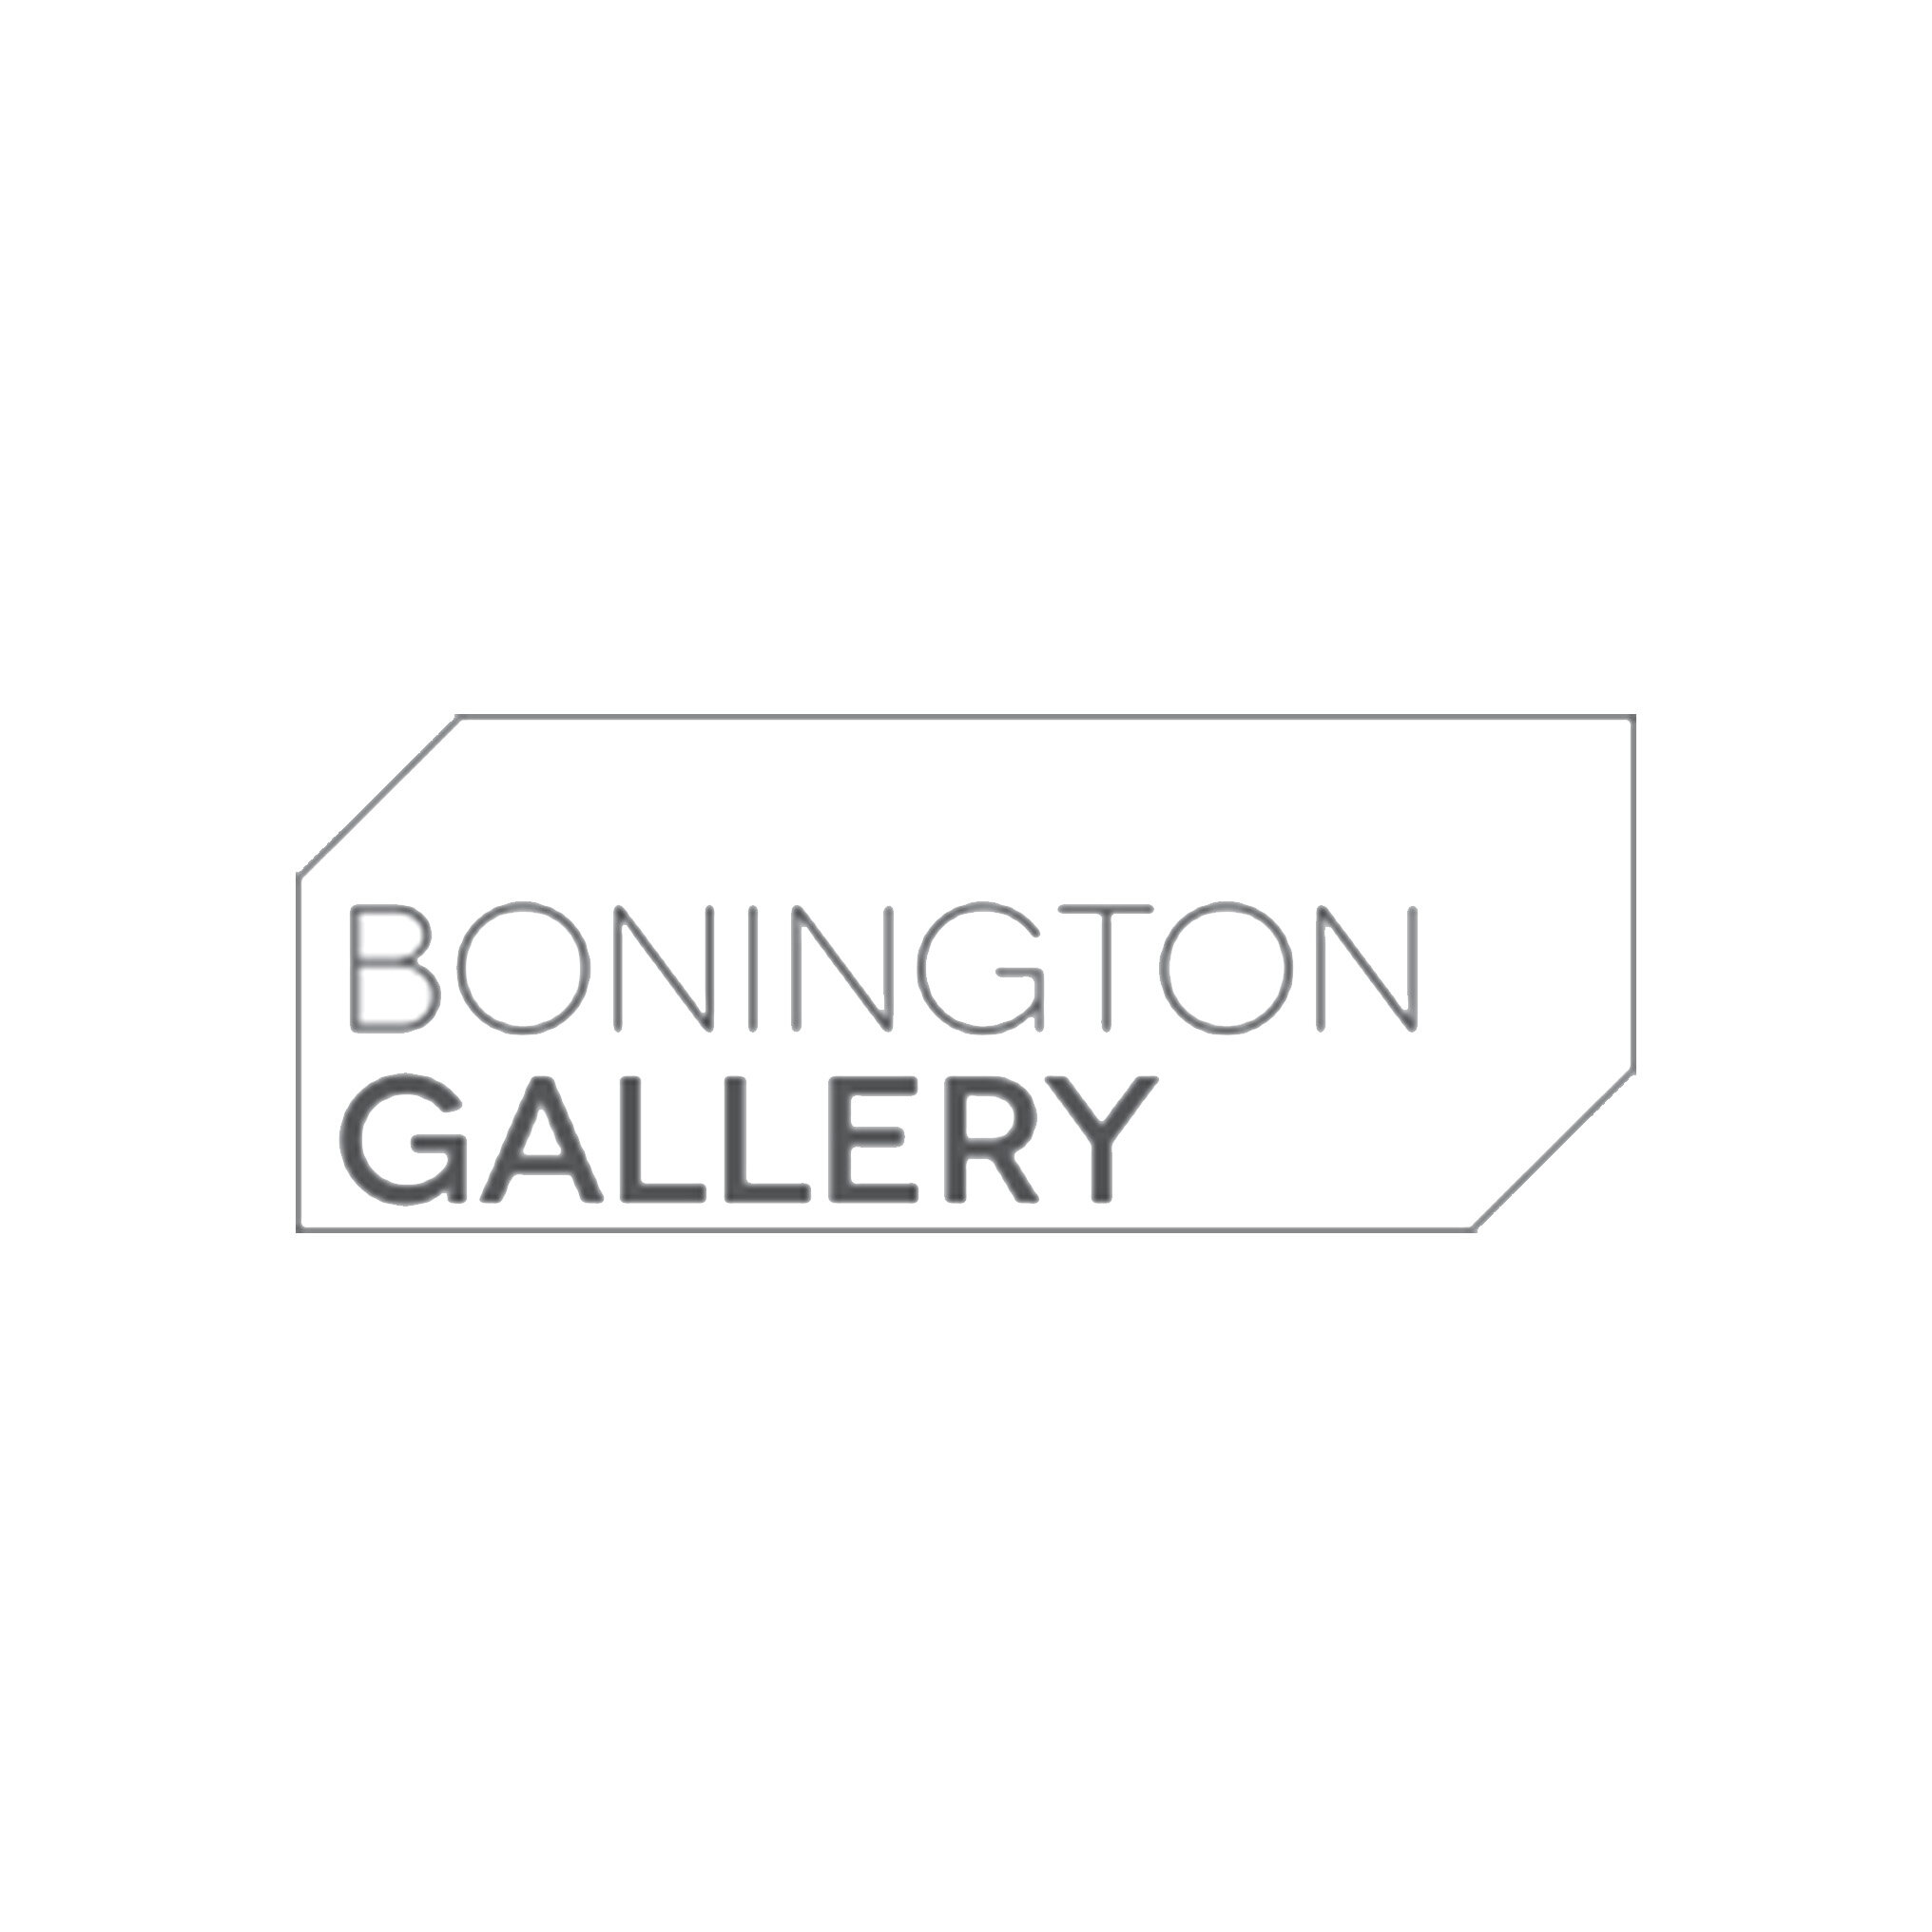 Bonington Gallery.jpg